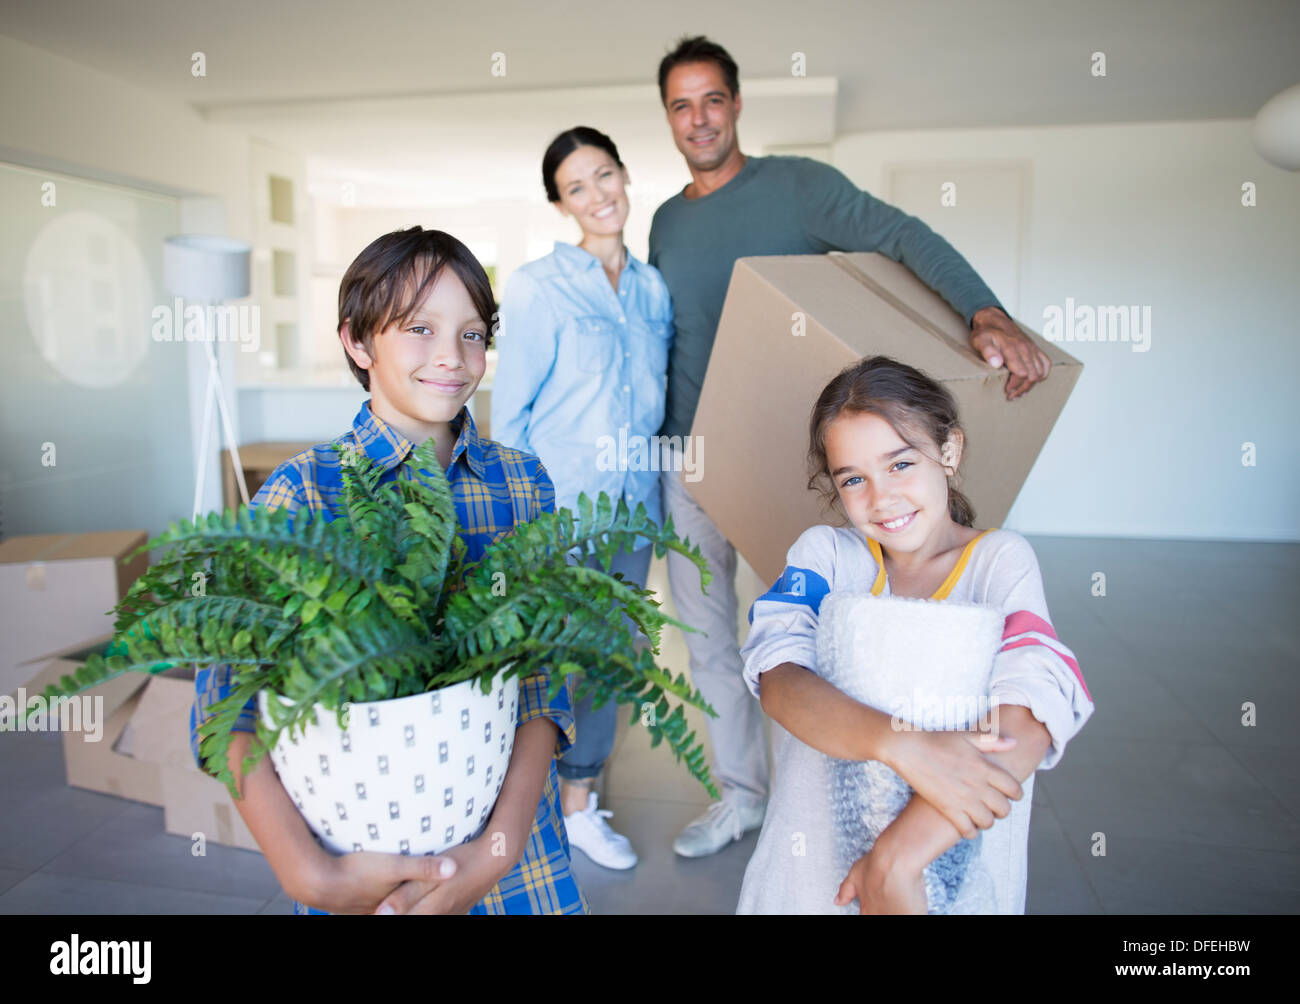 Portrait of smiling family holding possessions dans nouvelle maison Banque D'Images